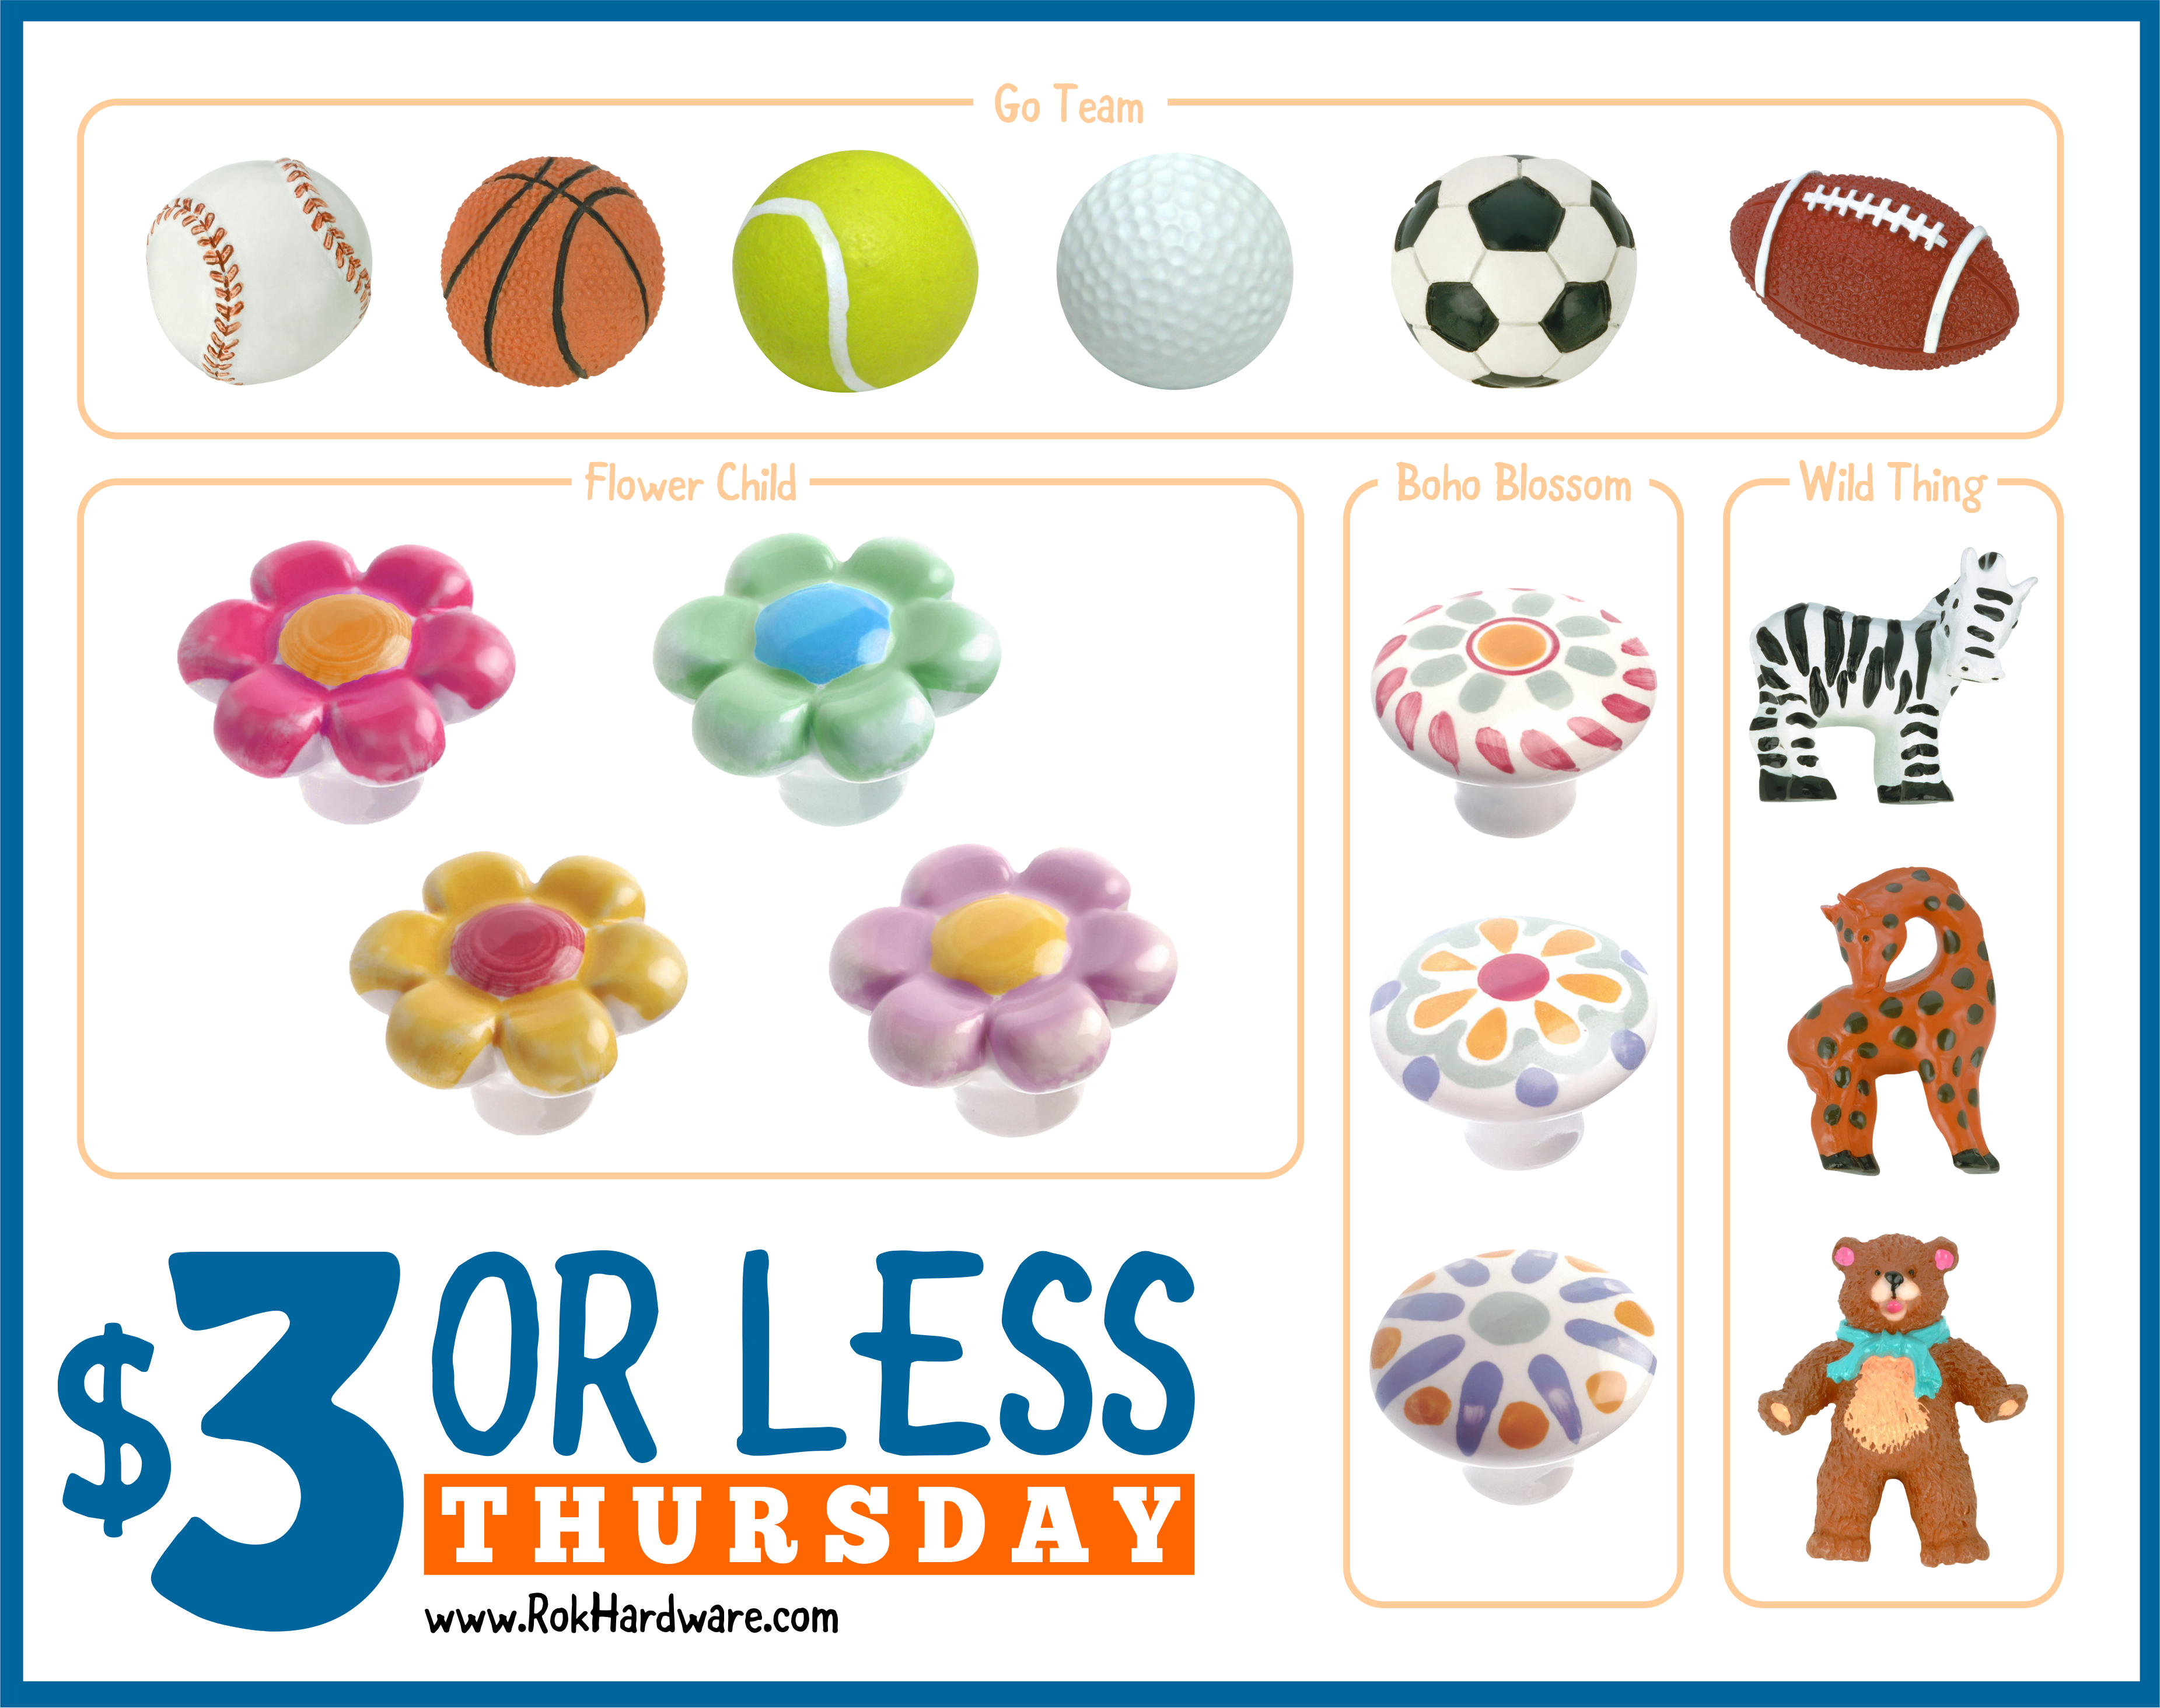 $3 Thursday! Children's knobs for $3 or less